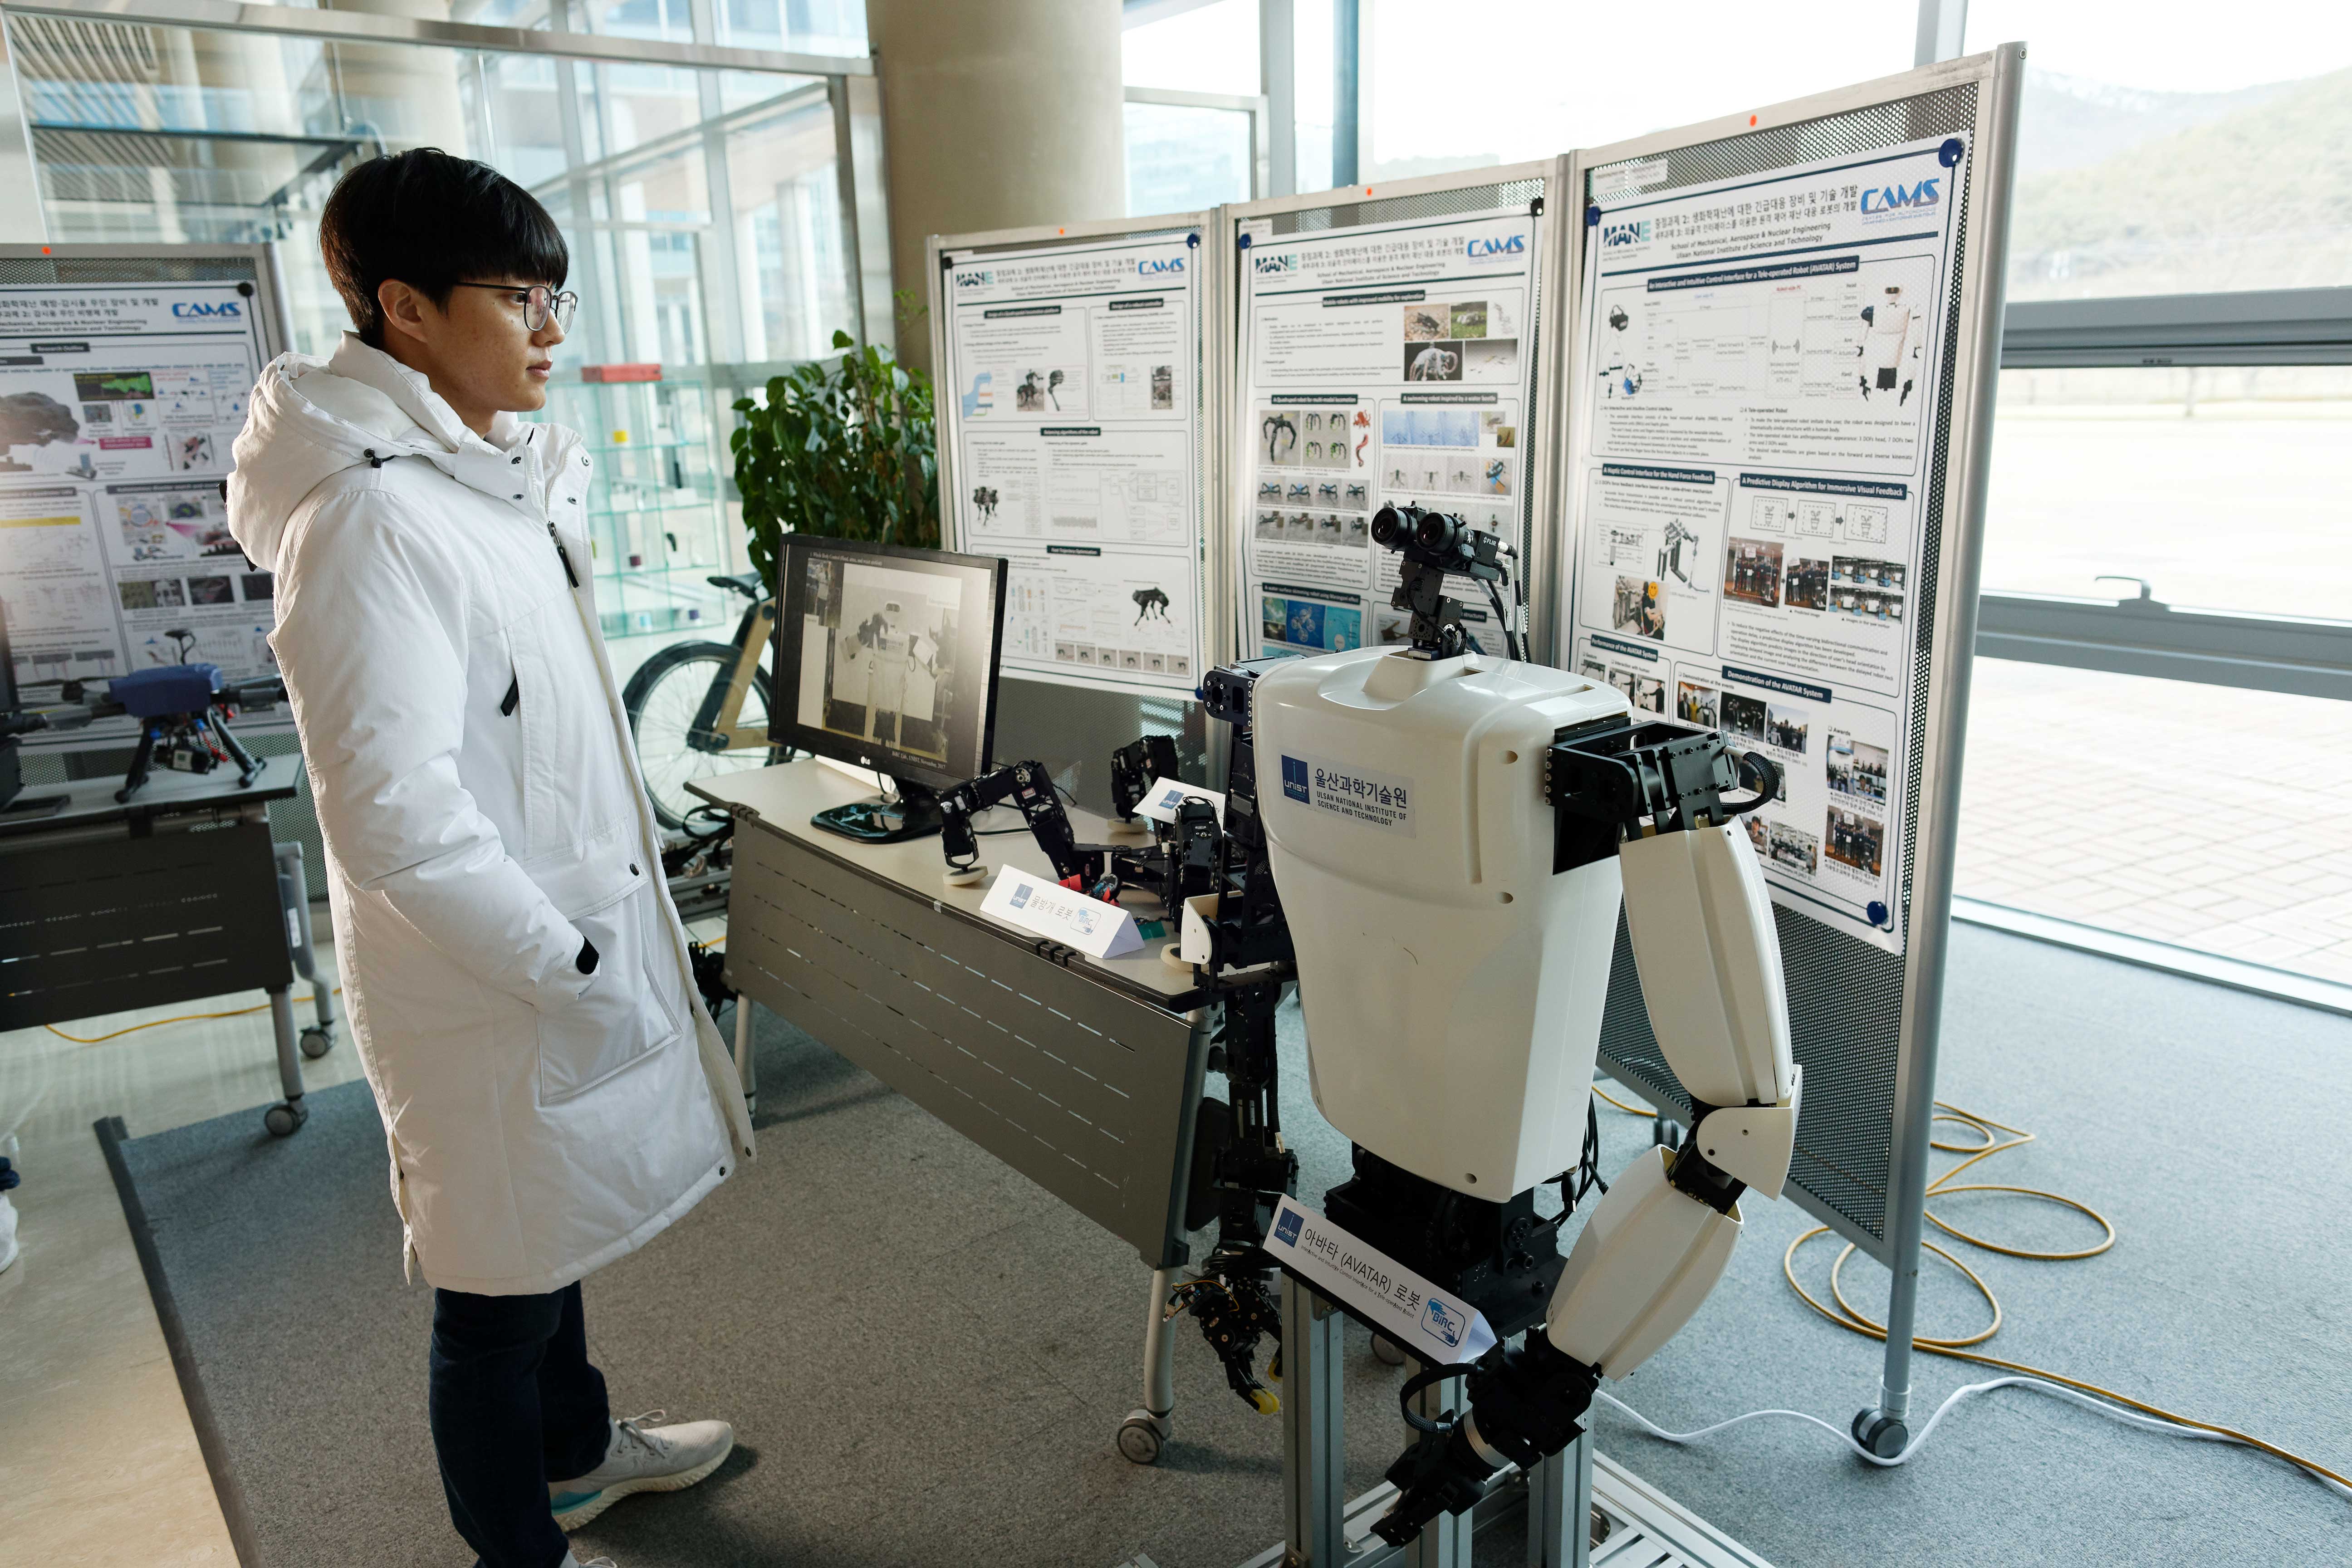 재난 현장에서 활용될 수 있는 아바타 로봇도 전시됐다. | 사진: 김경채